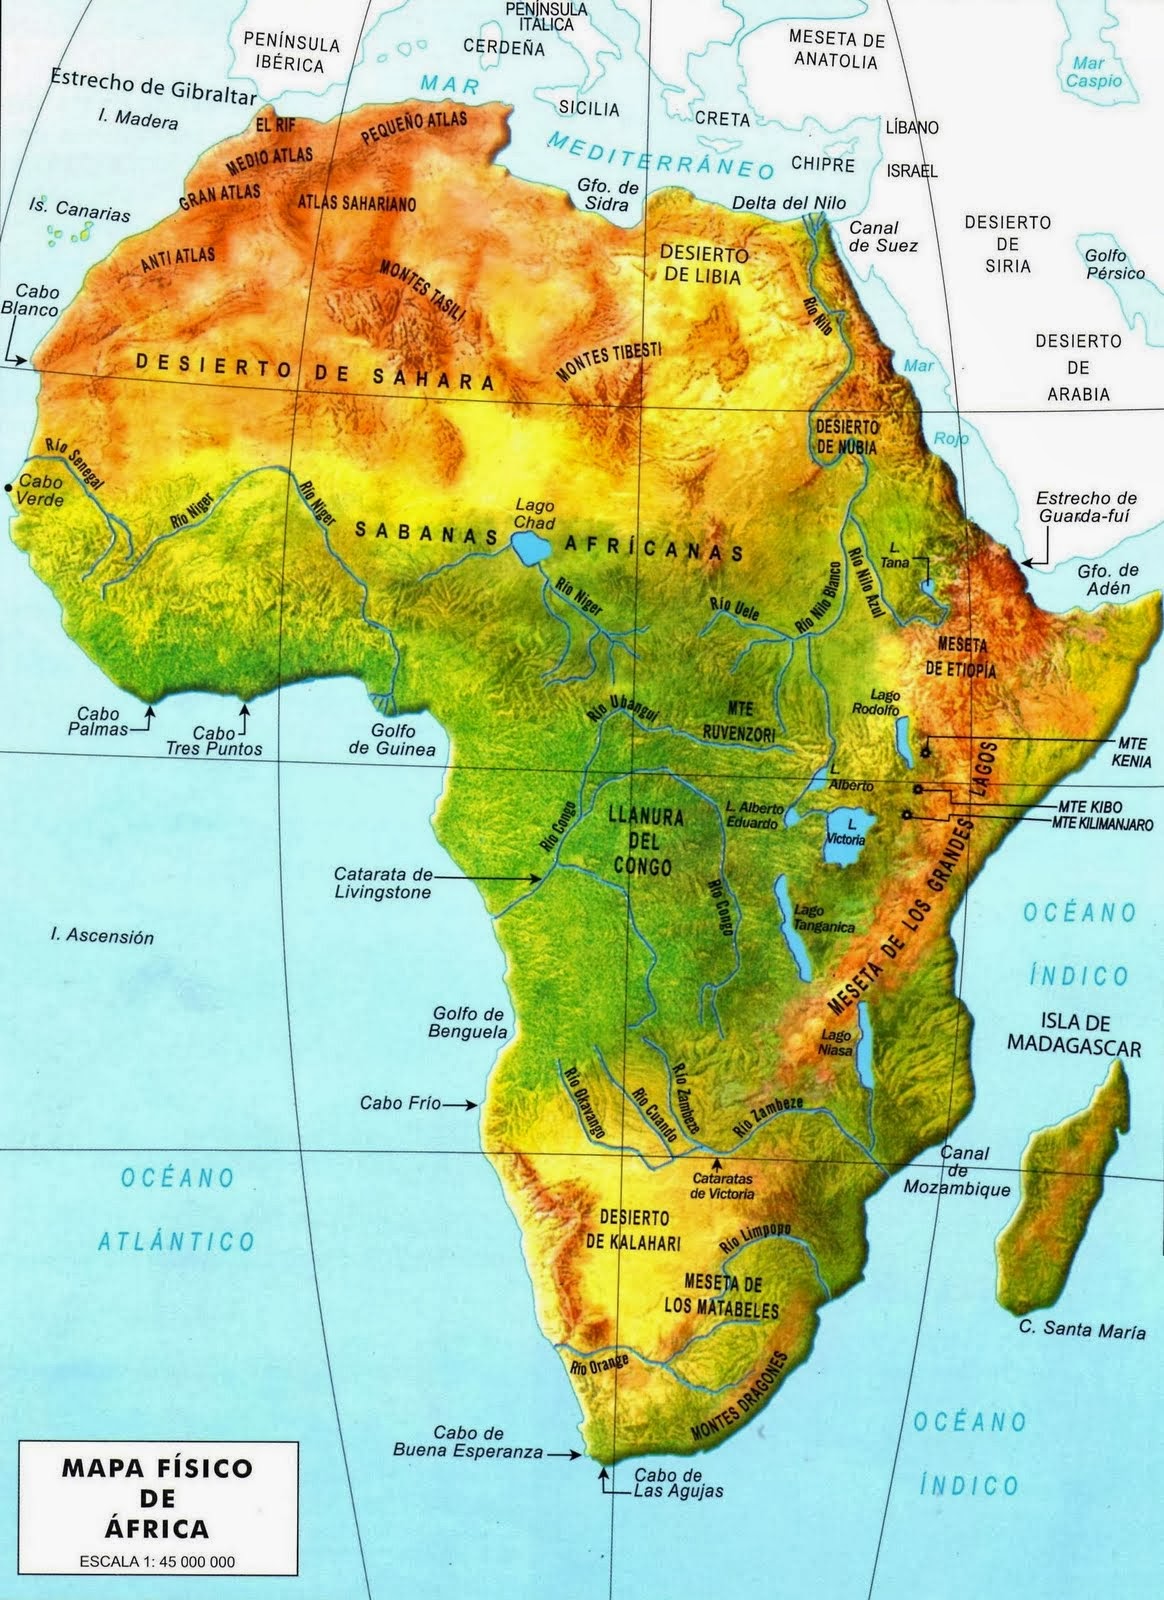 SEGUNDO JOCELYN BELL: ÁFRICA-Relieve, ríos y lagos